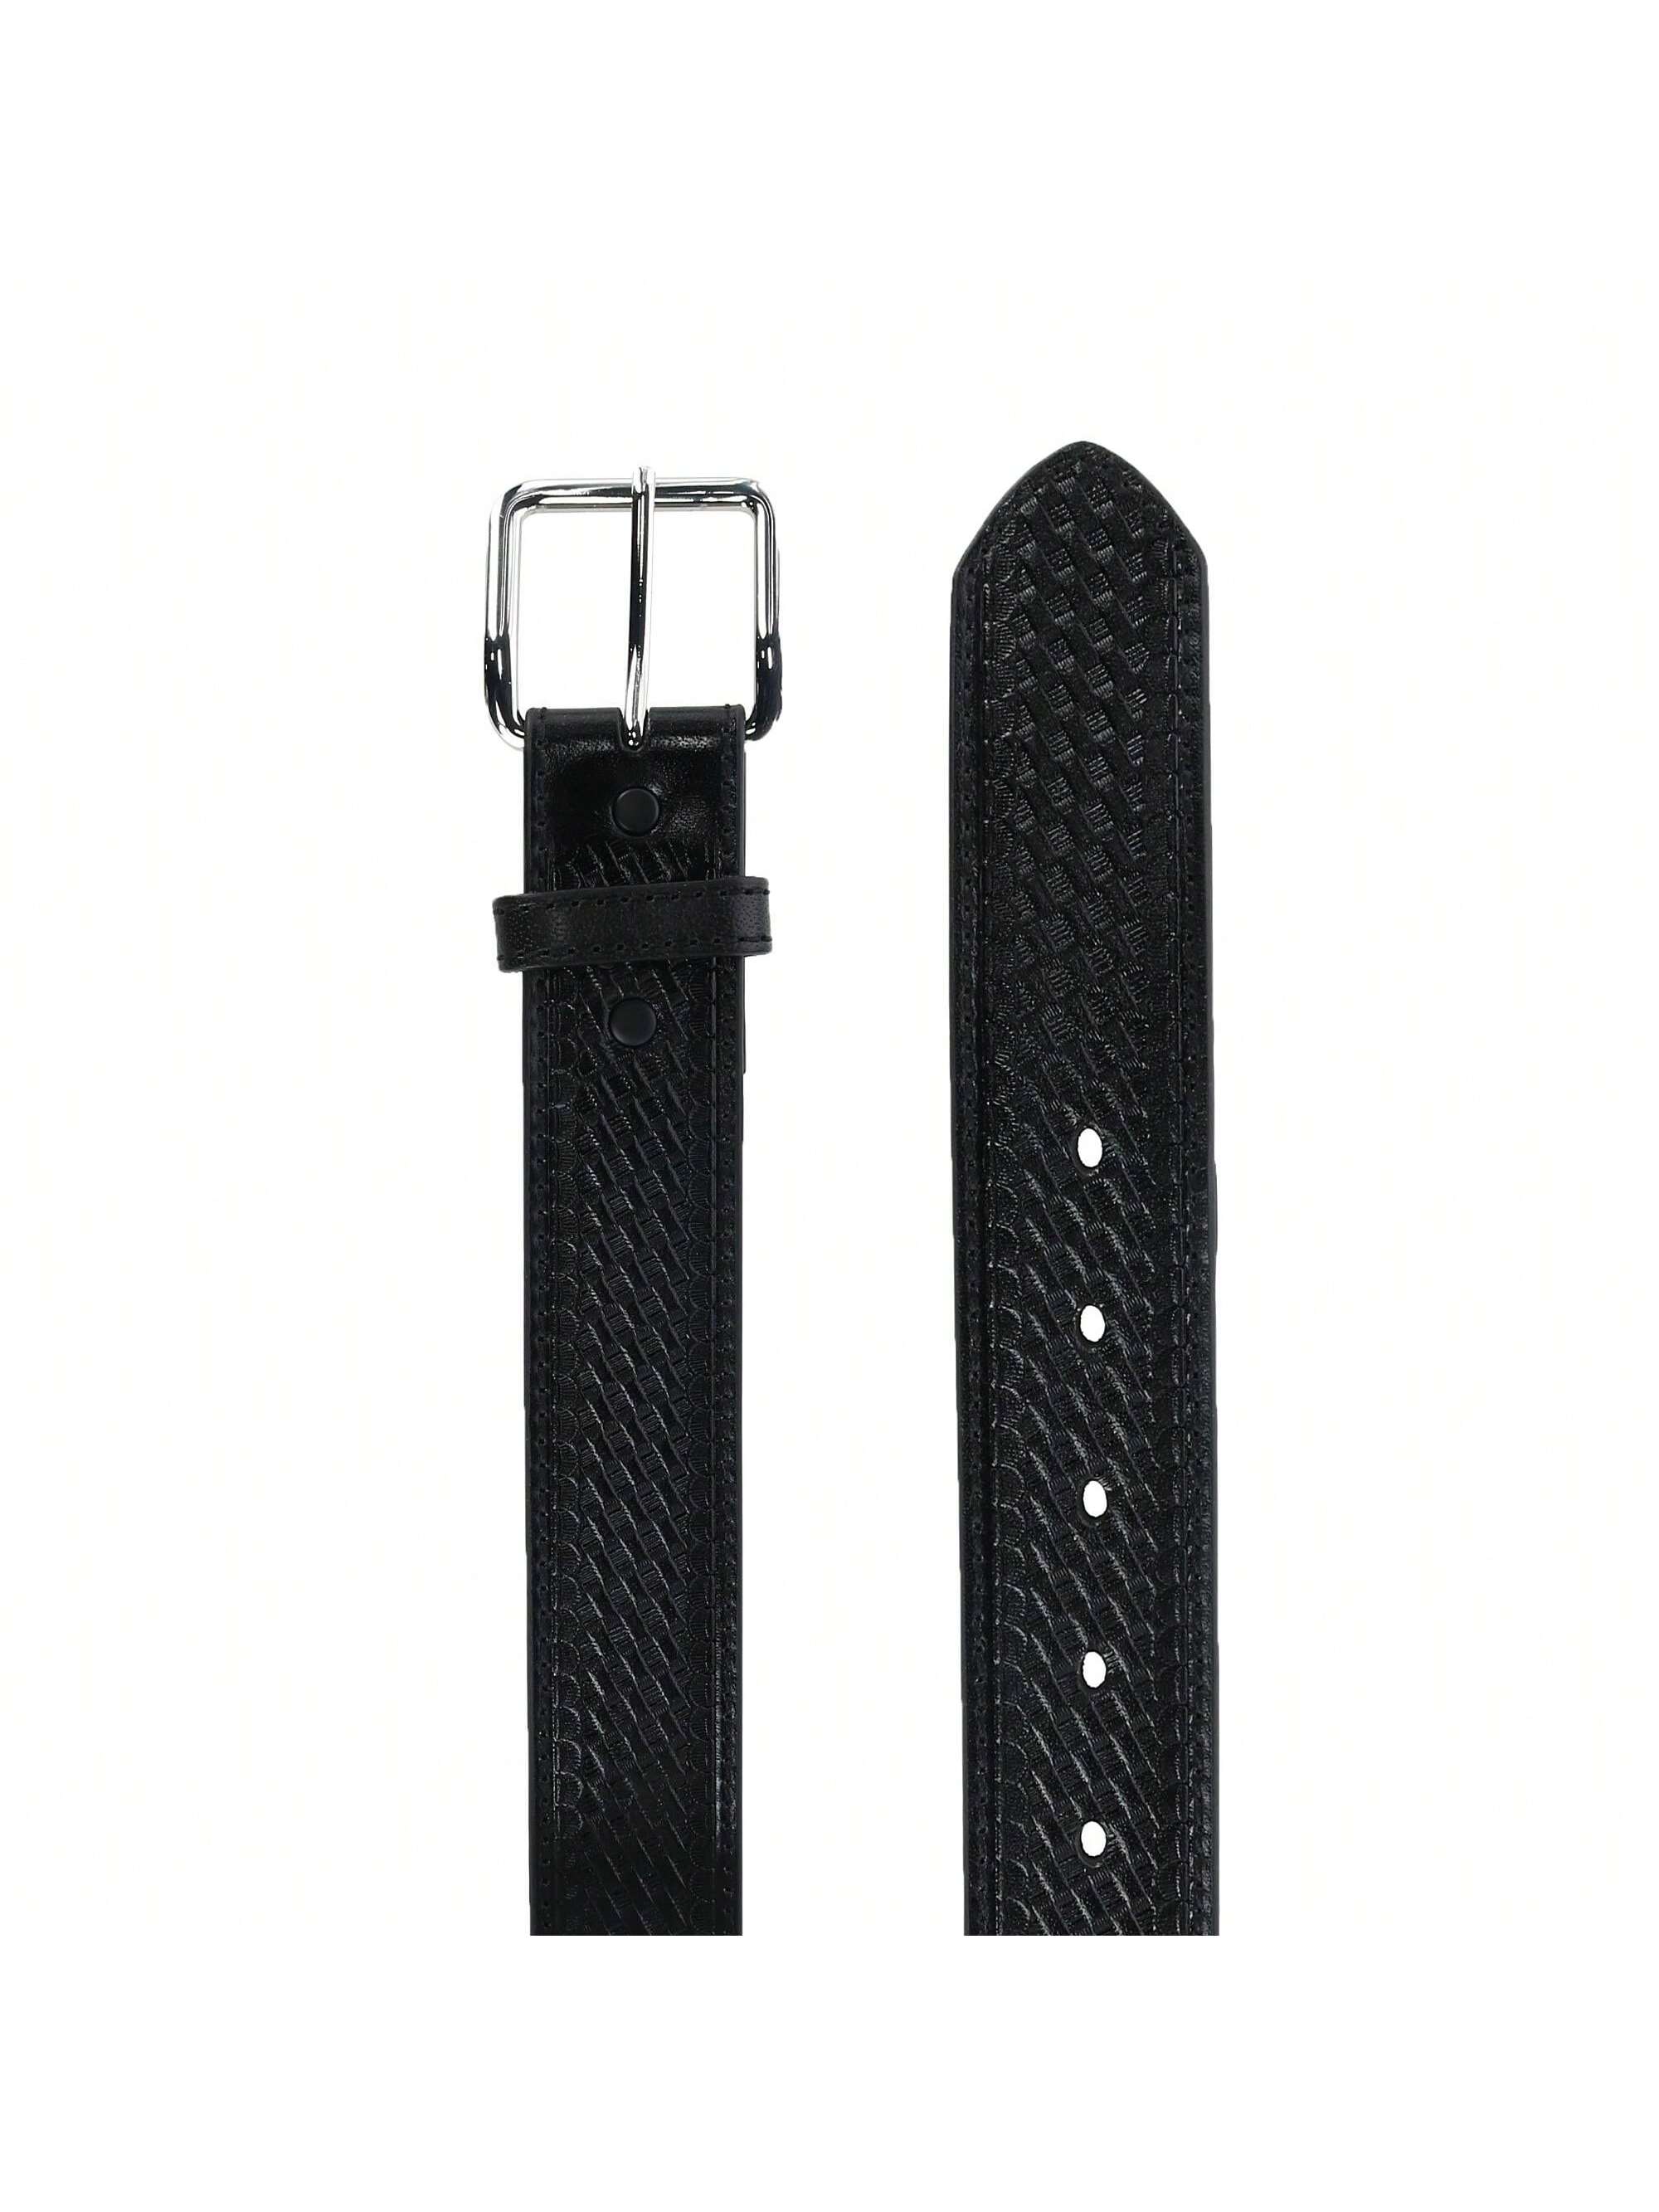 Мужской кожаный ремень Nocona Belt Co, большой и высокий, 1,5 дюйма, черный